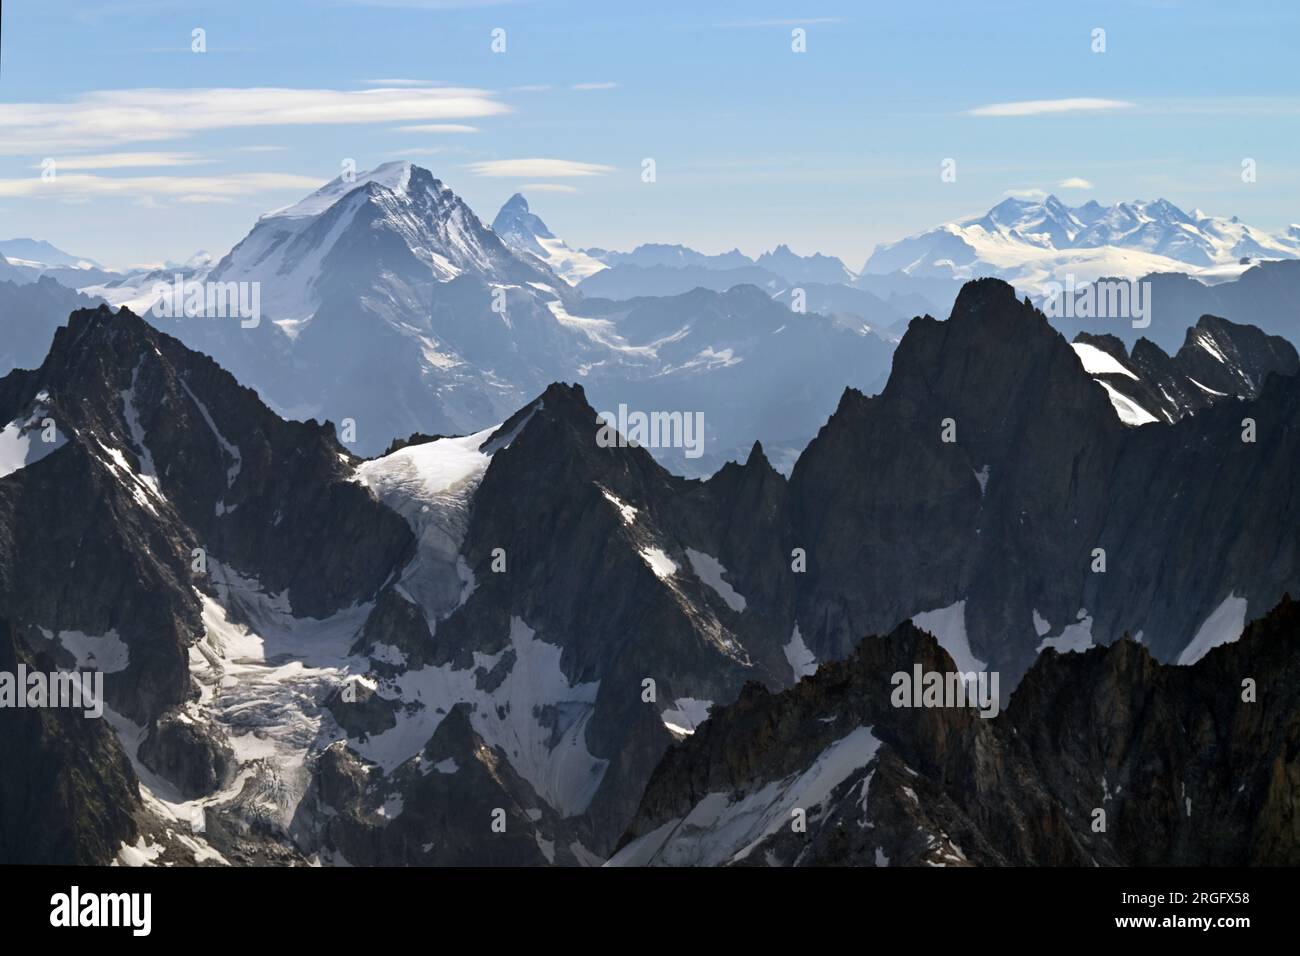 Sommets du massif du Mont blanc, et en arrière-plan Grand Combin, Matterhorn (ou Cervin), Monte Rosa (Mont Rose) en Suisse et alpes italiennes Banque D'Images